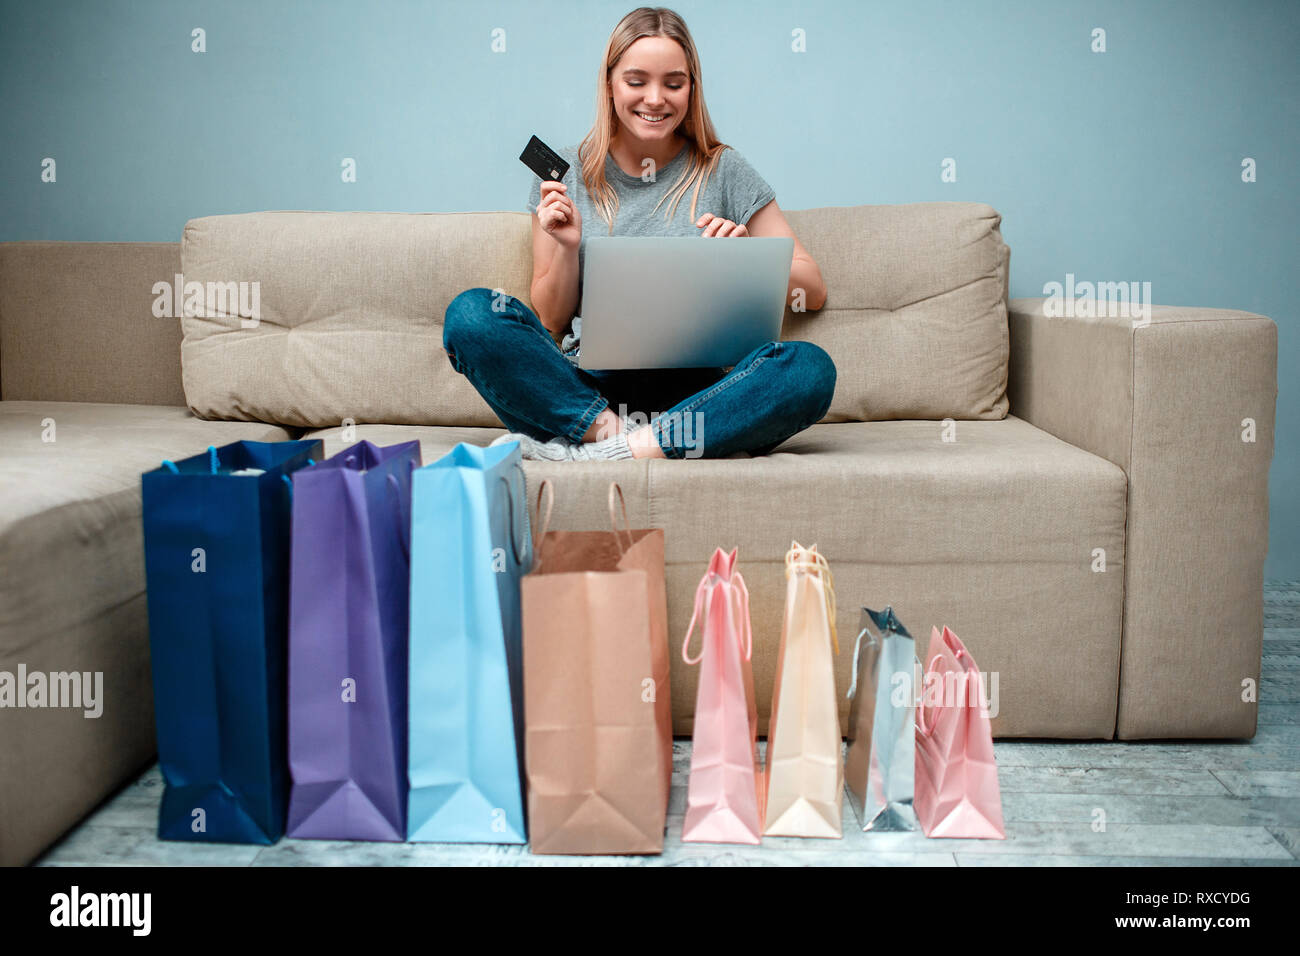 Magasinage en ligne à la maison. Jeune femme heureuse avec carte de crédit  est prête à beaucoup de ventes en magasin en ligne tout en restant assis  sur le canapé avec shopping